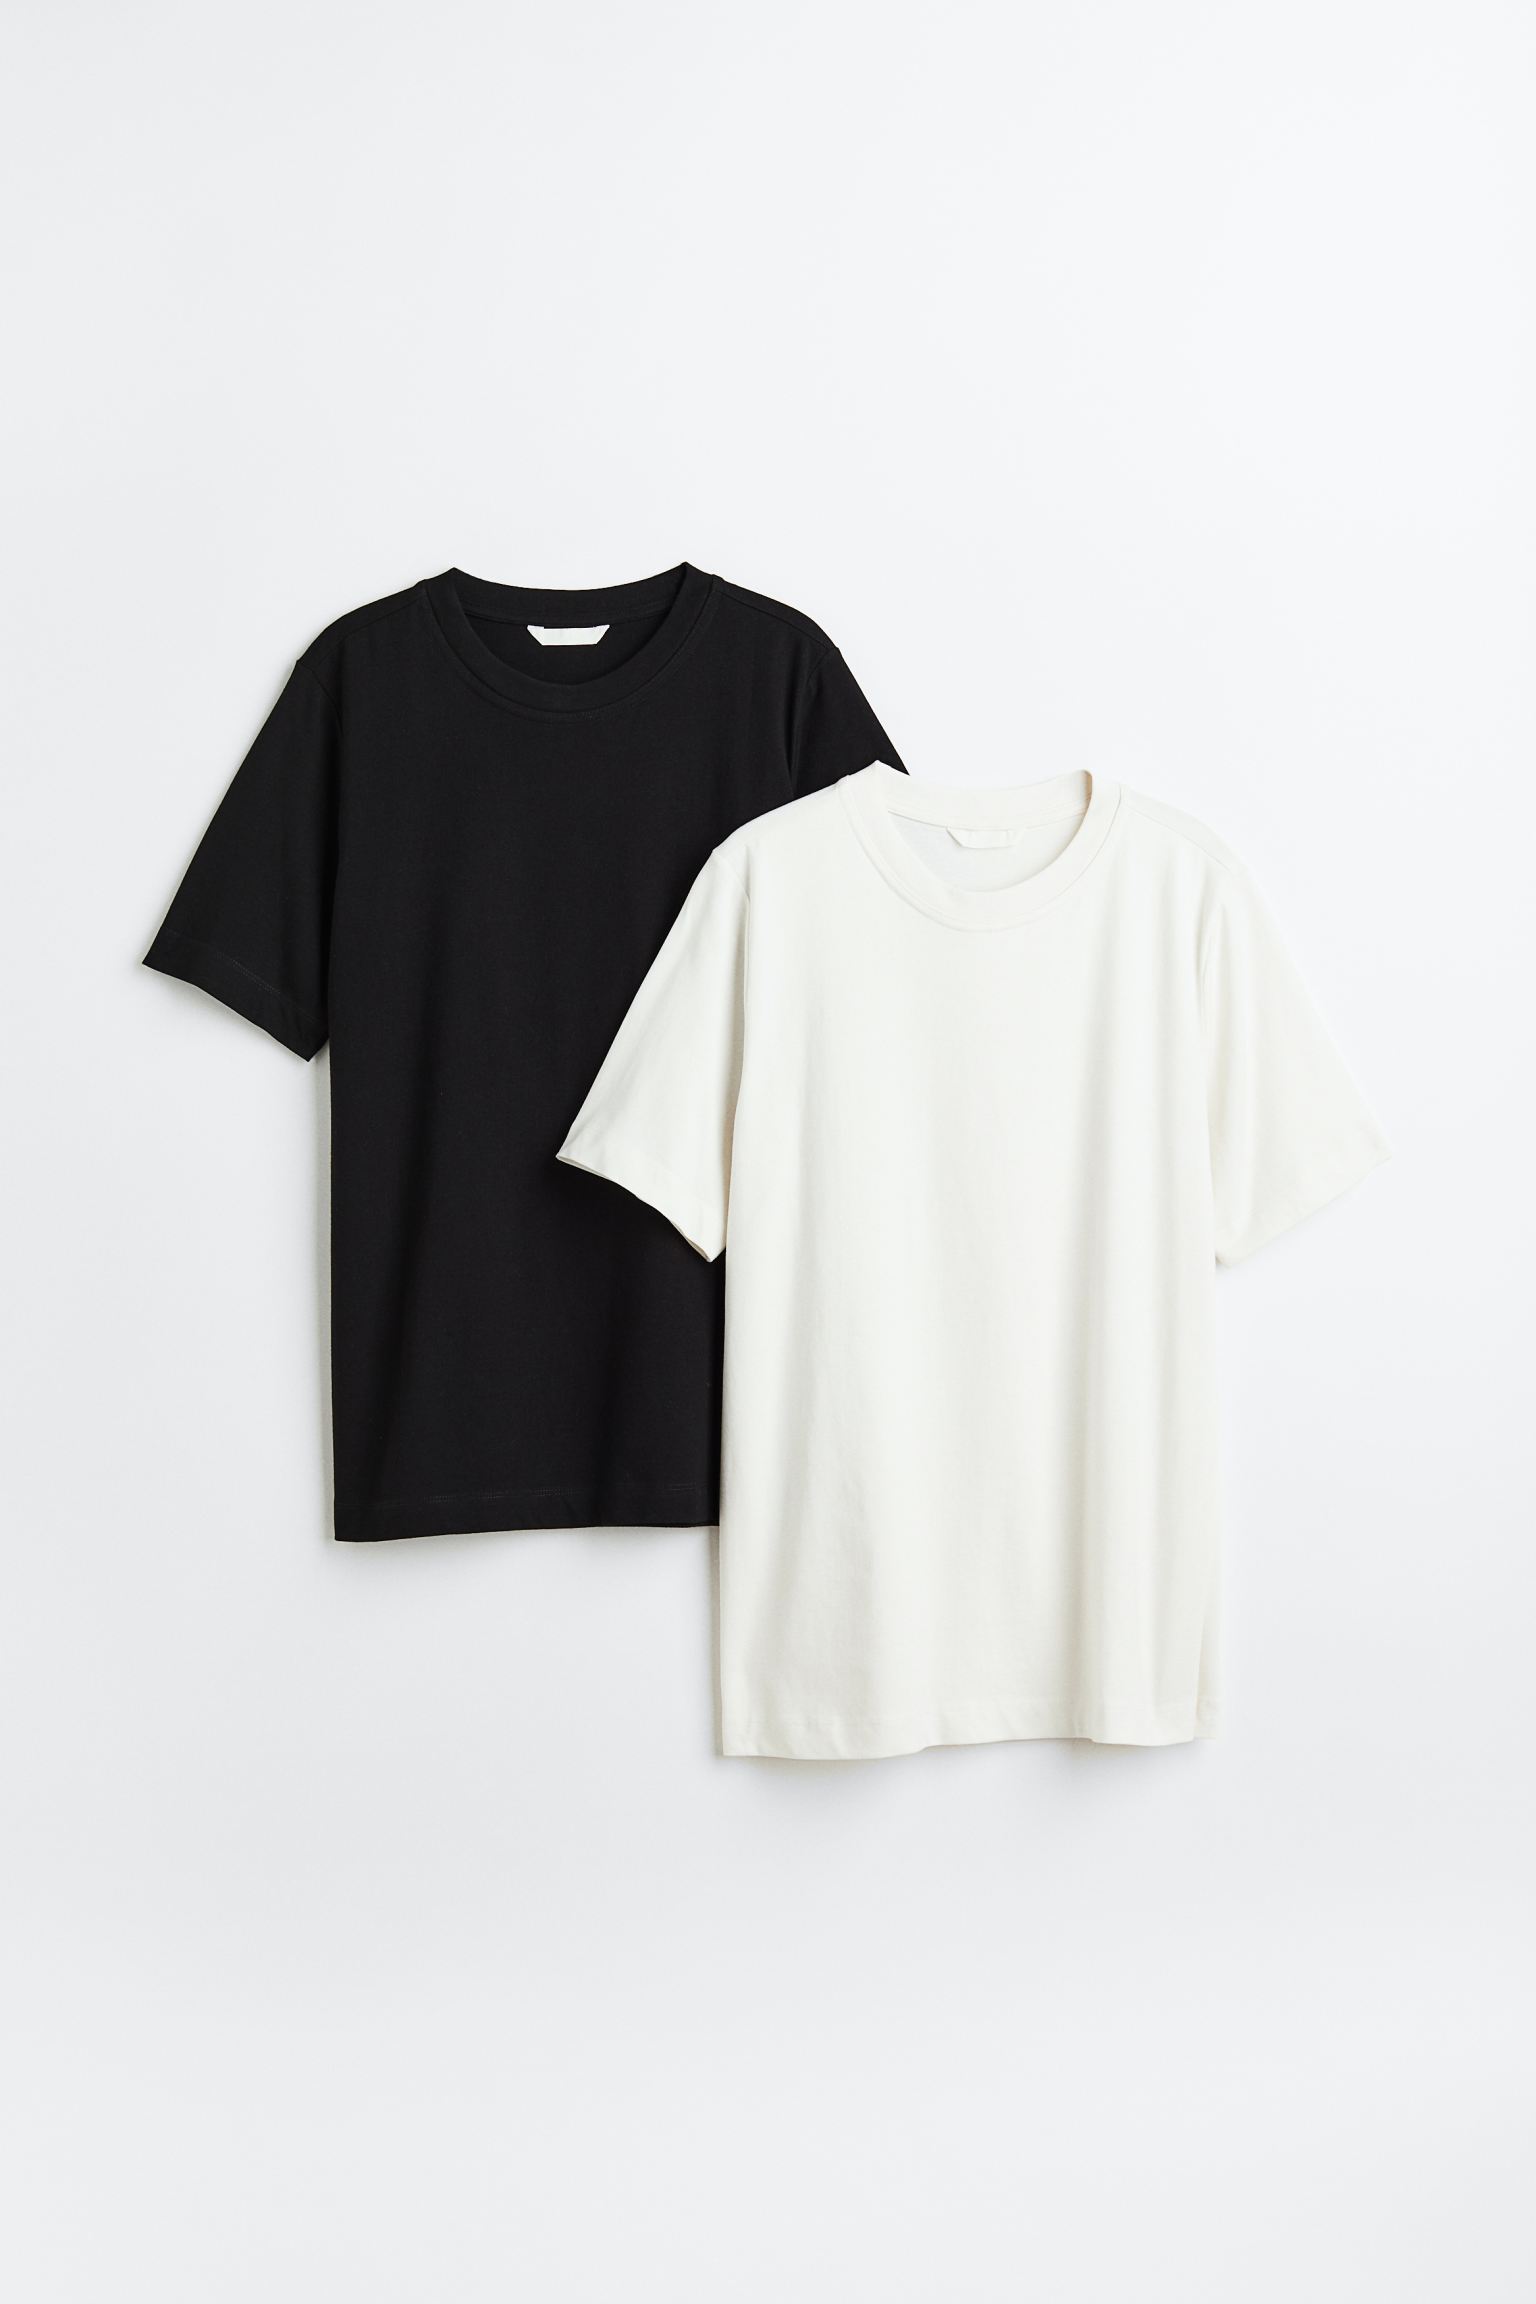 Комплект футболок женских H&M 1030468004 черных M (доставка из-за рубежа)